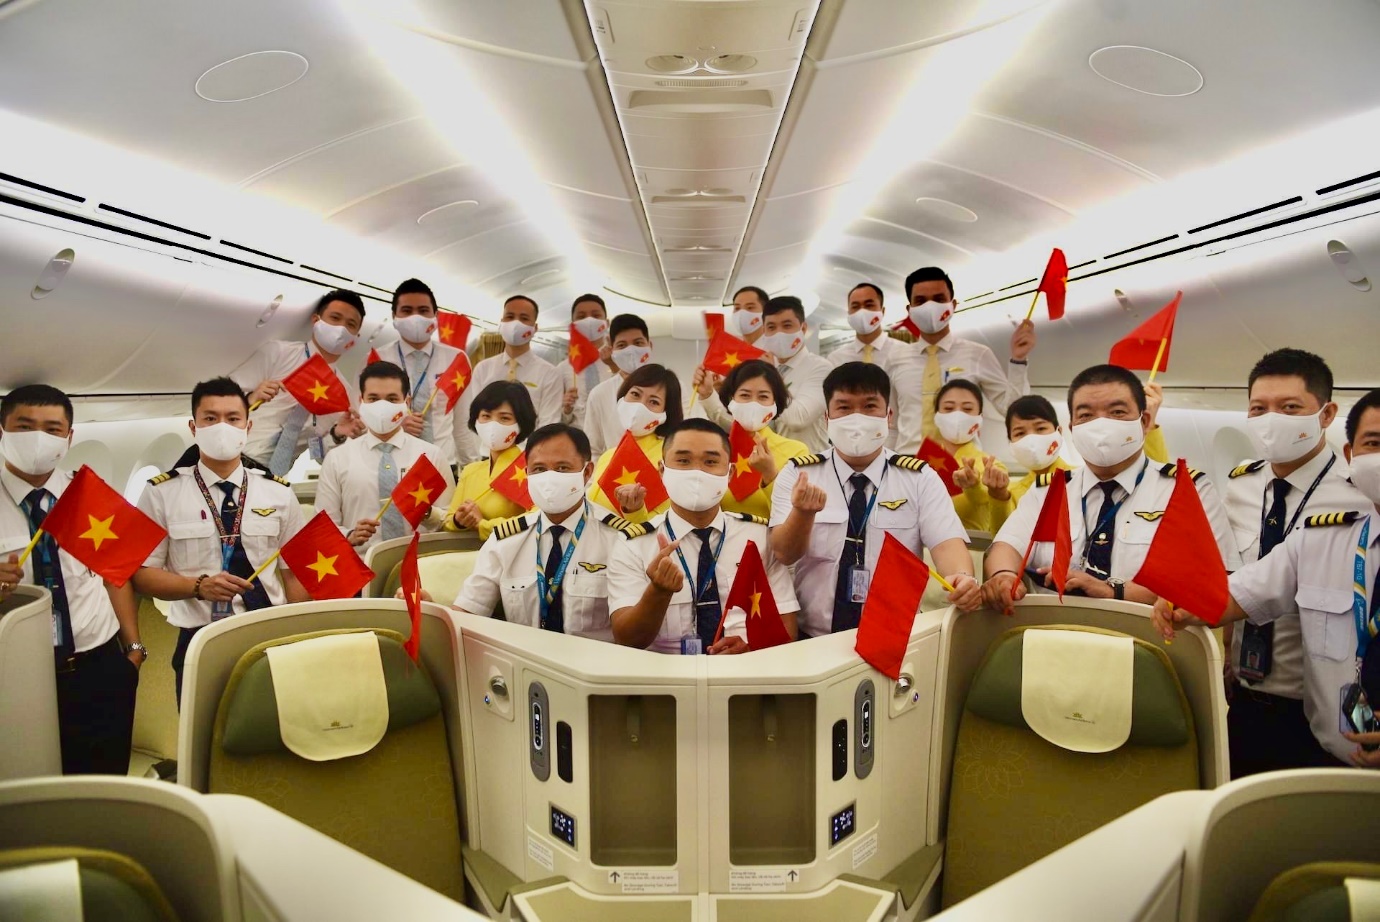 Cơ trưởng Vietnam Airlines: Tự hào khi lái máy bay hiện đại bậc nhất - Ảnh 3.